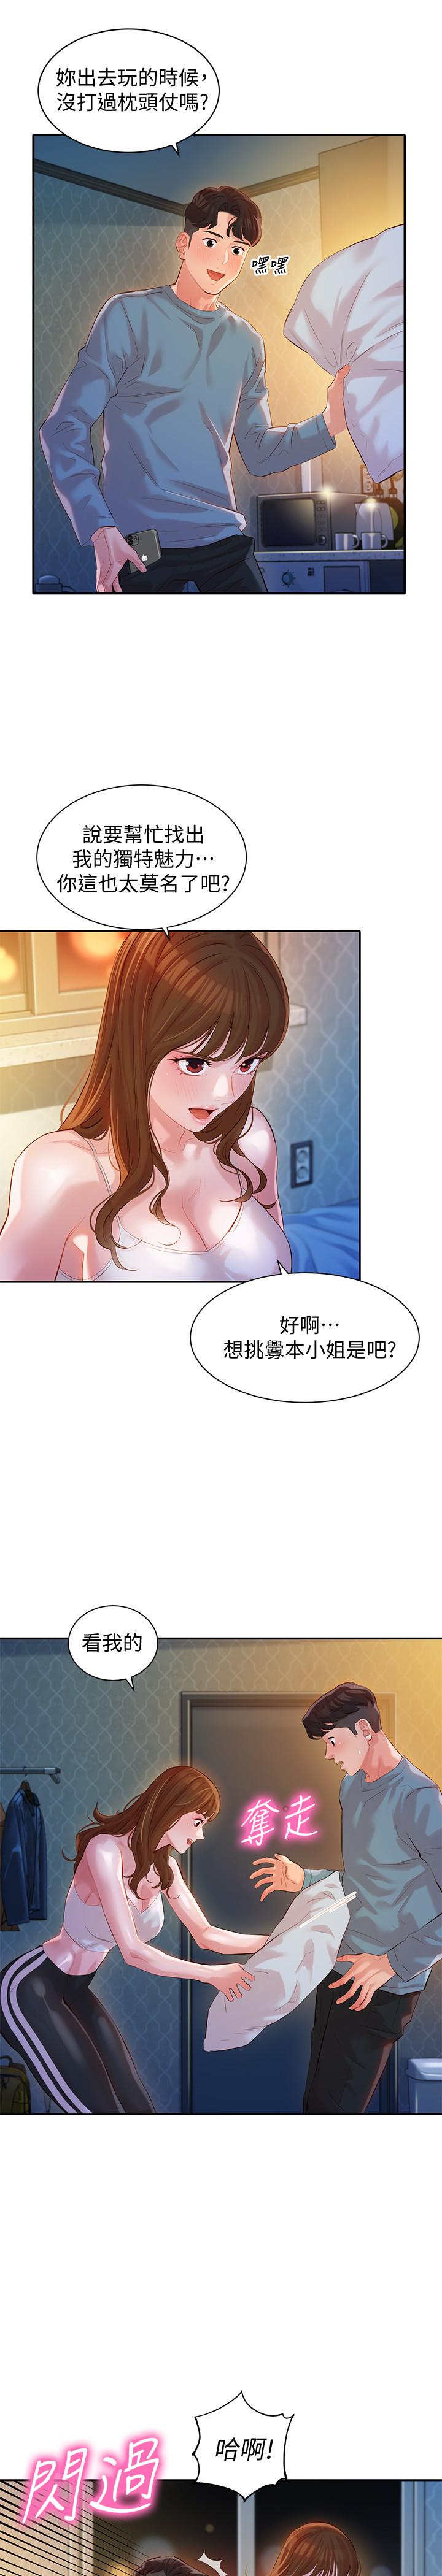 韩国污漫画 女神寫真 第14话-在两人之间流动的微妙情感 21